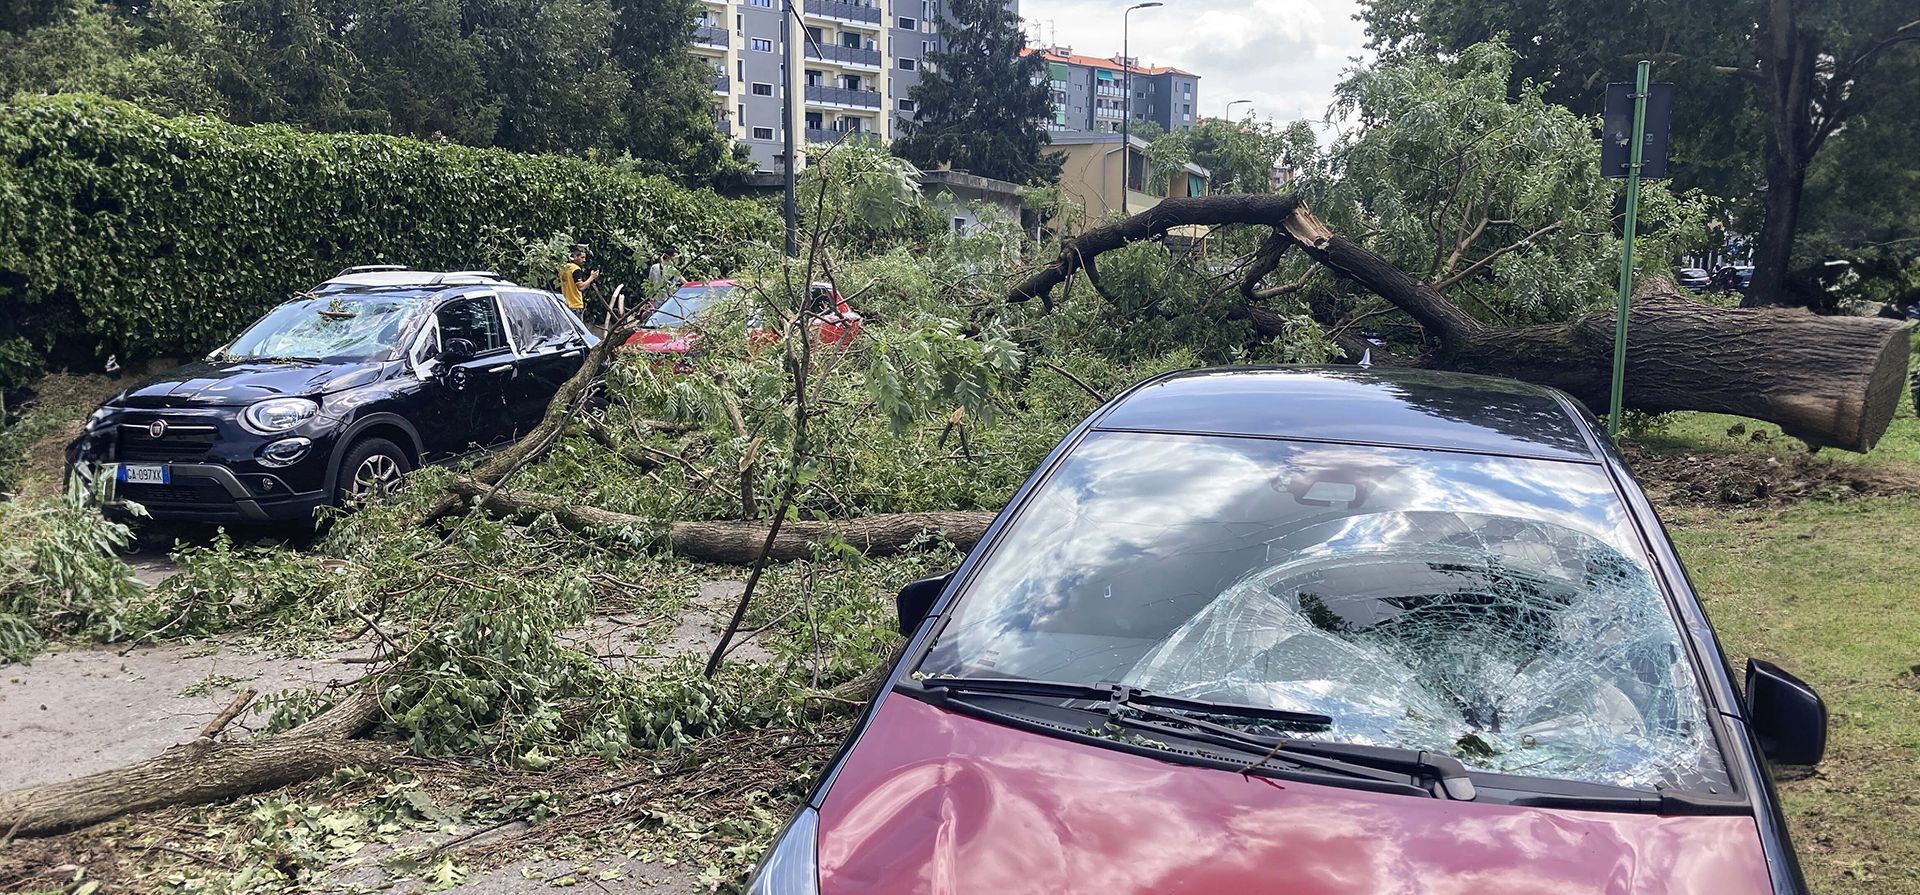 Un árbol yace sobre un automóvil después de caer durante una fuerte tormenta, en Milán, Italia, el martes 25 de julio de 2023. En los últimos días, Milán ha sido azotada por varias tormentas con granizo del tamaño de pelotas de tenis y azotada por fuertes vientos. (Foto AP Luca Bruno)